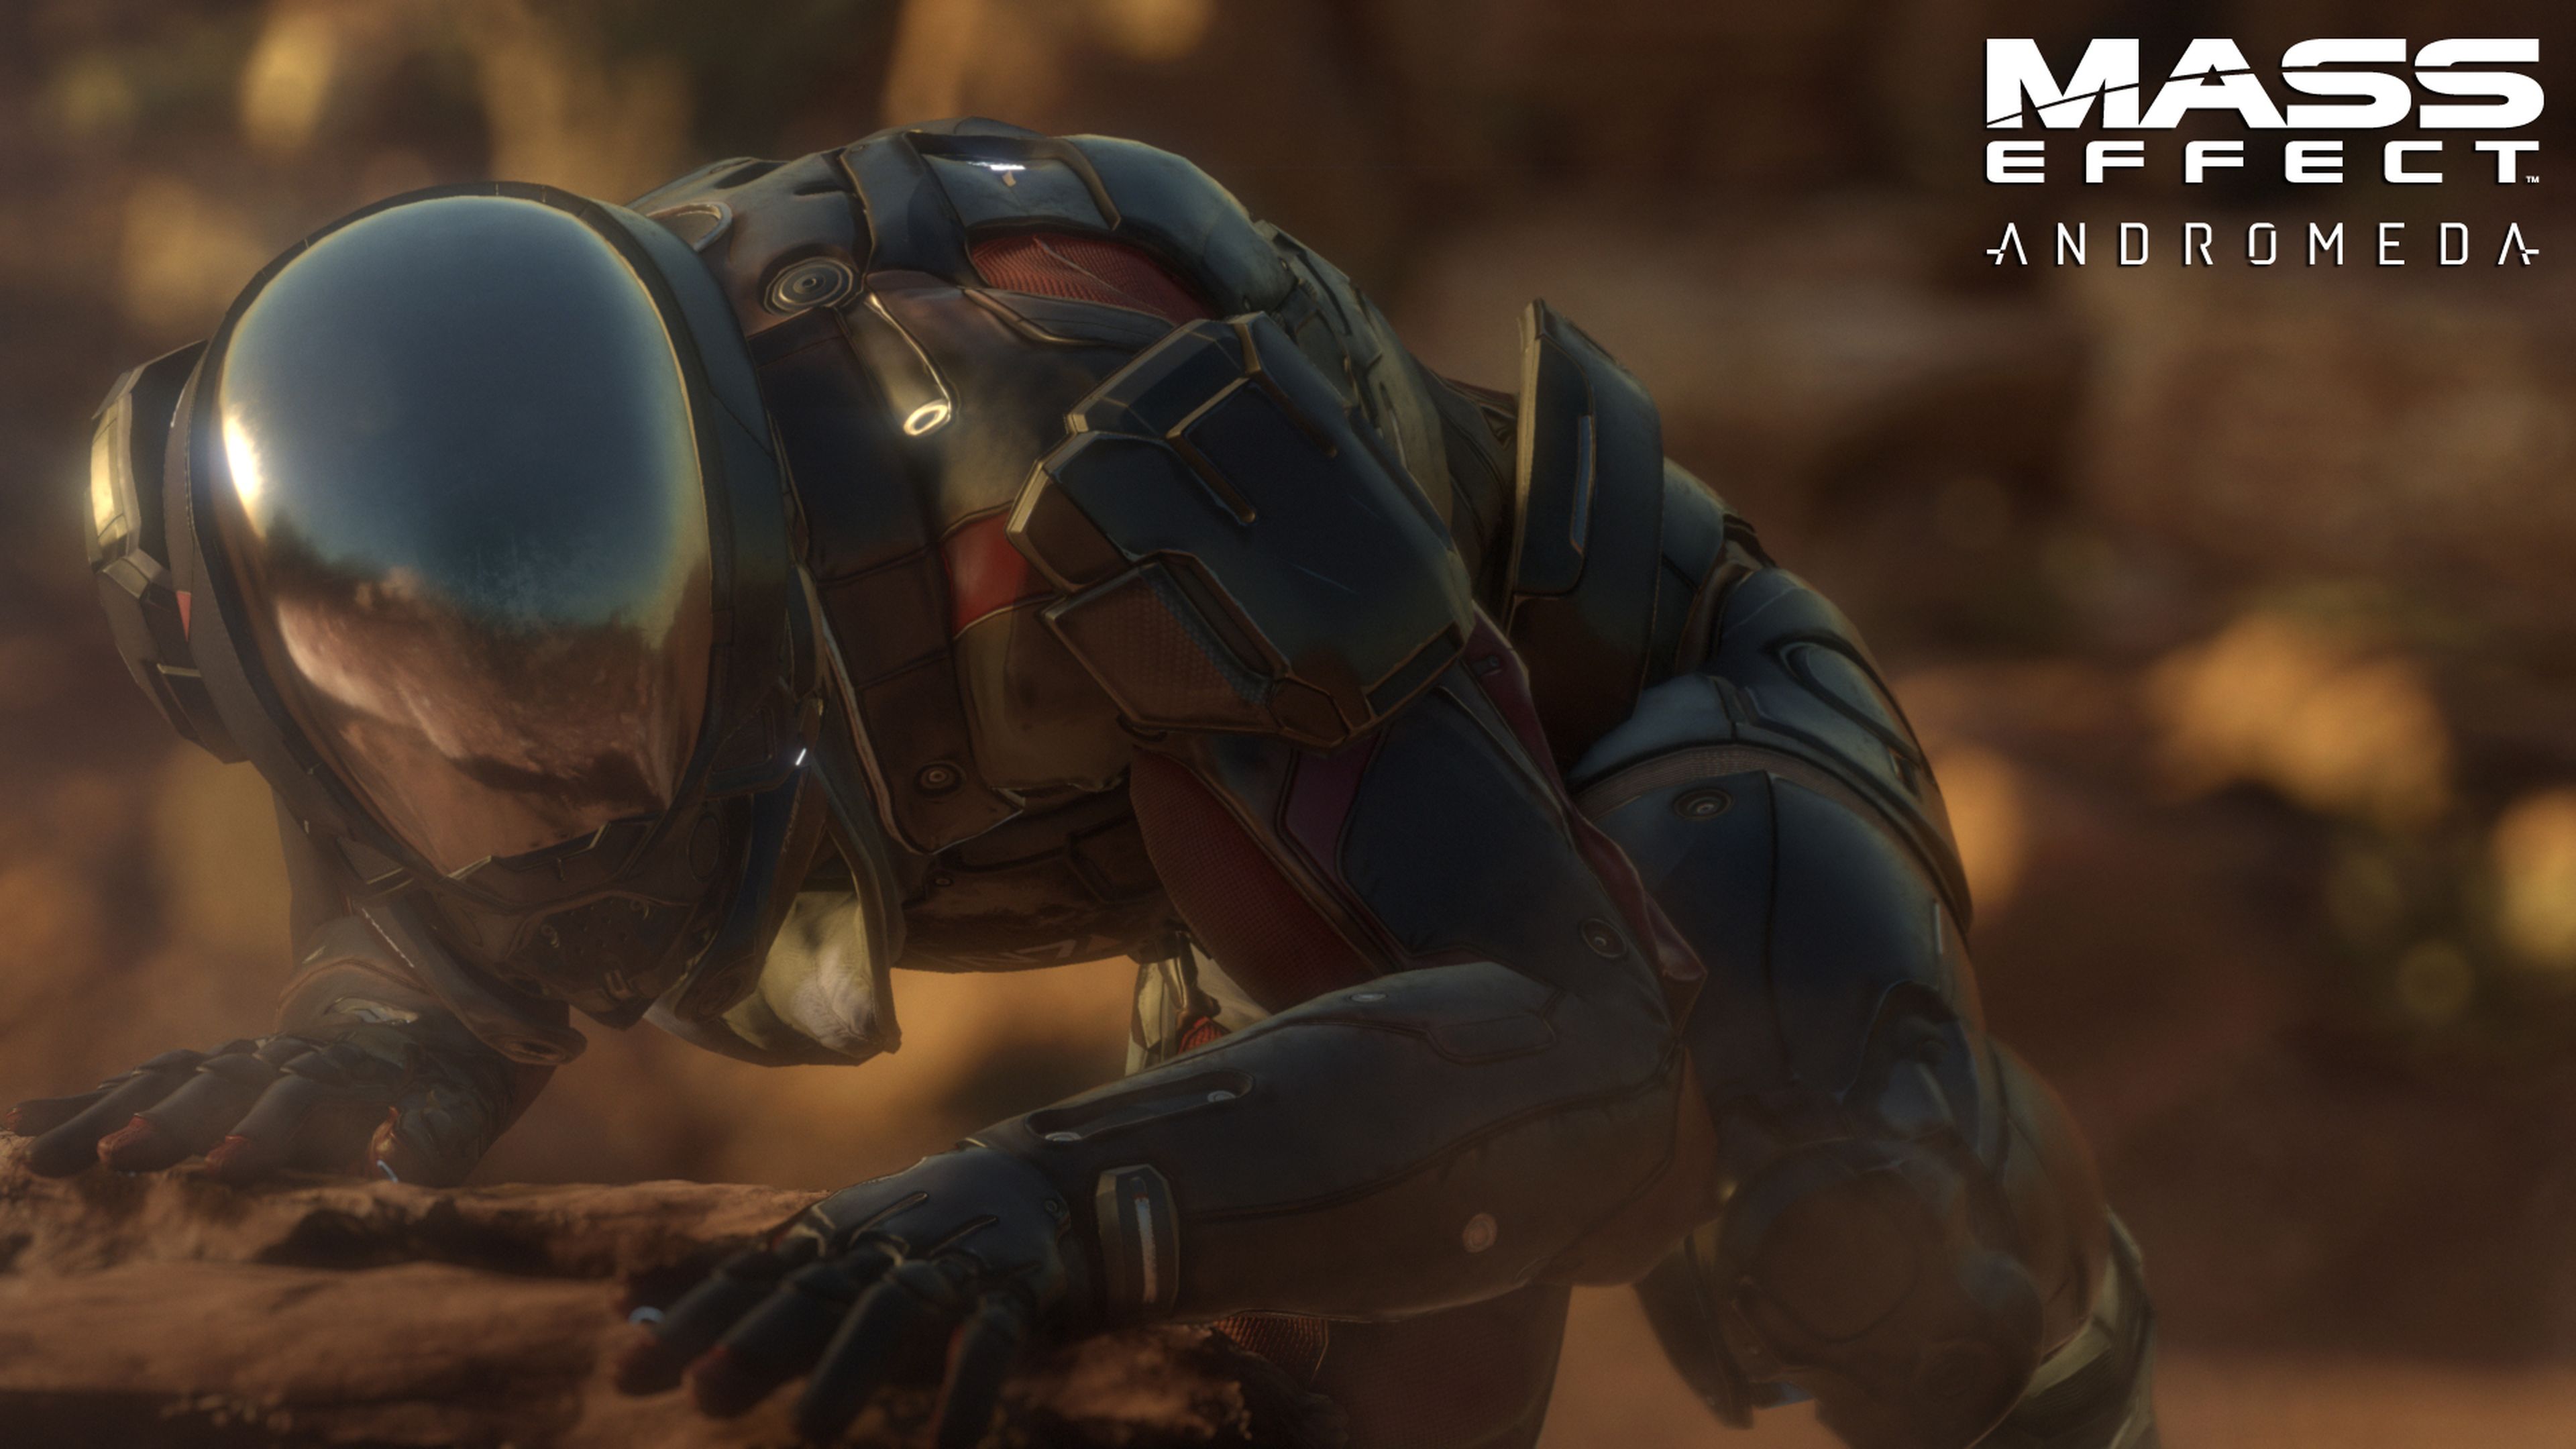 Mass Effect Andromeda, su director de desarrollo abandona BioWare